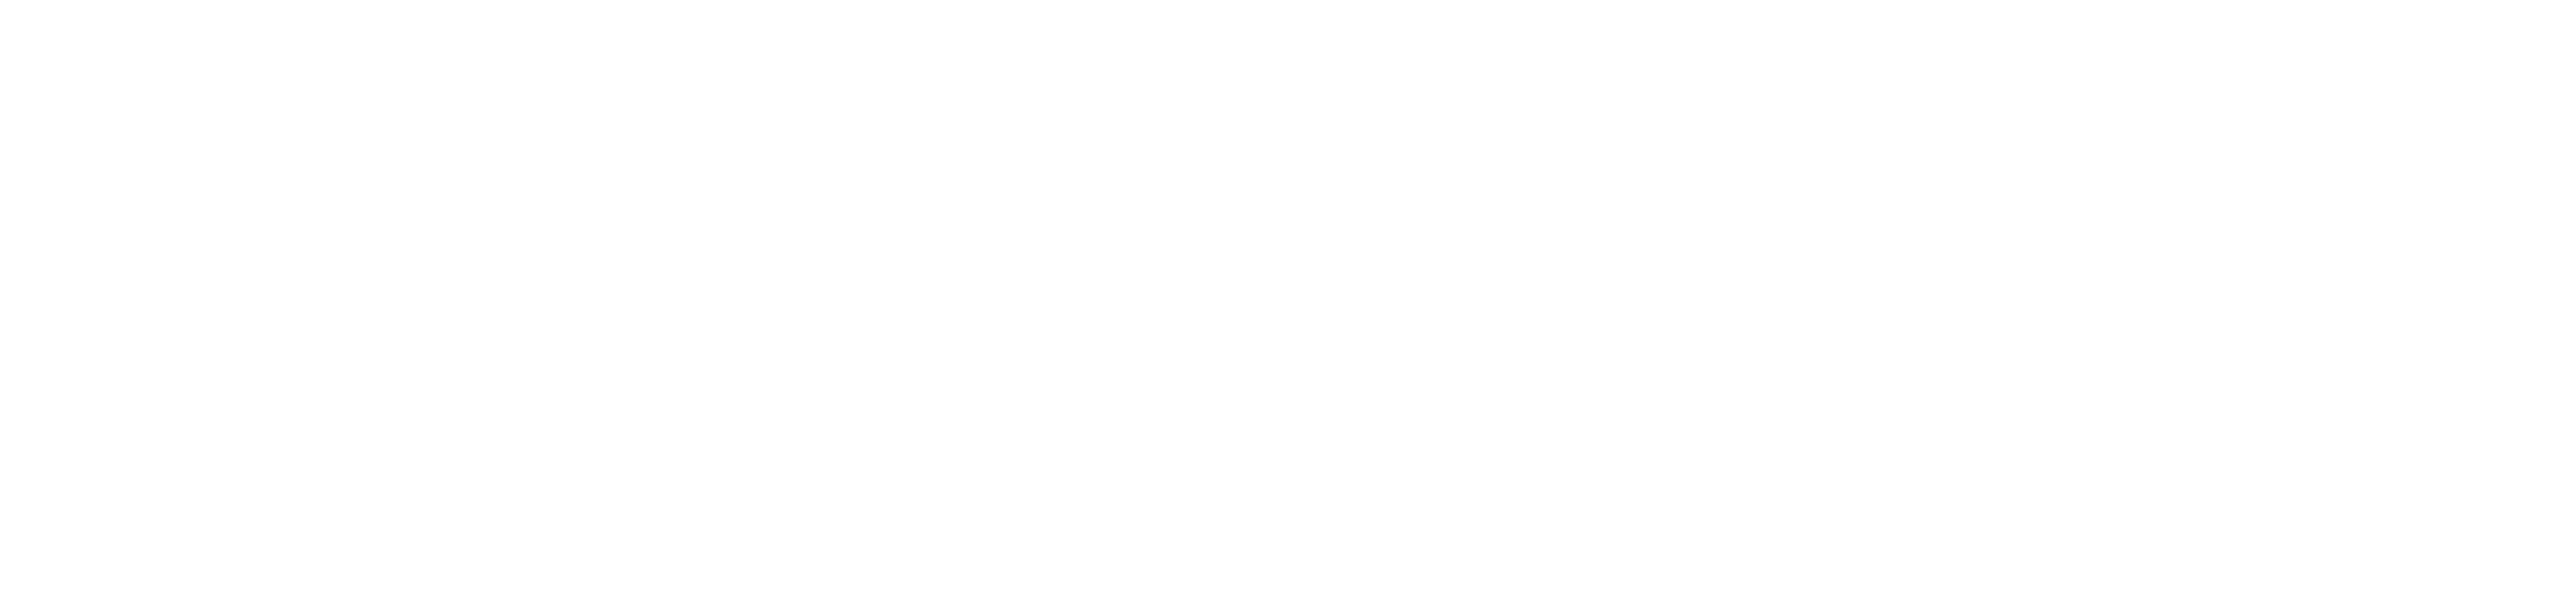 The Murder Mansion